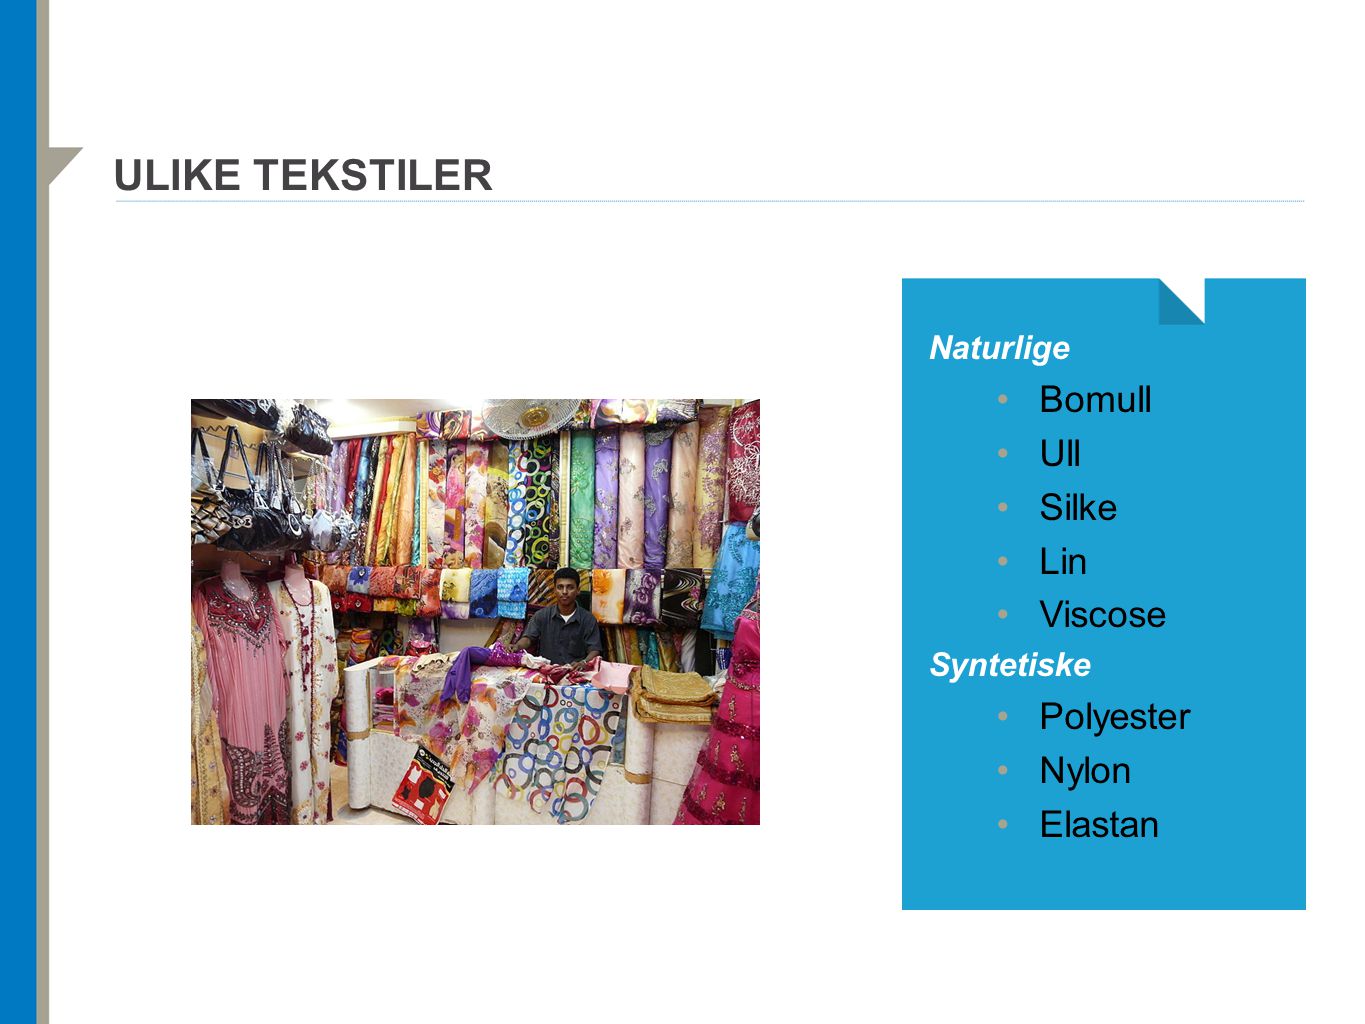 Ulike tekstiler Bomull Ull Silke Lin Viscose Polyester Nylon Elastan